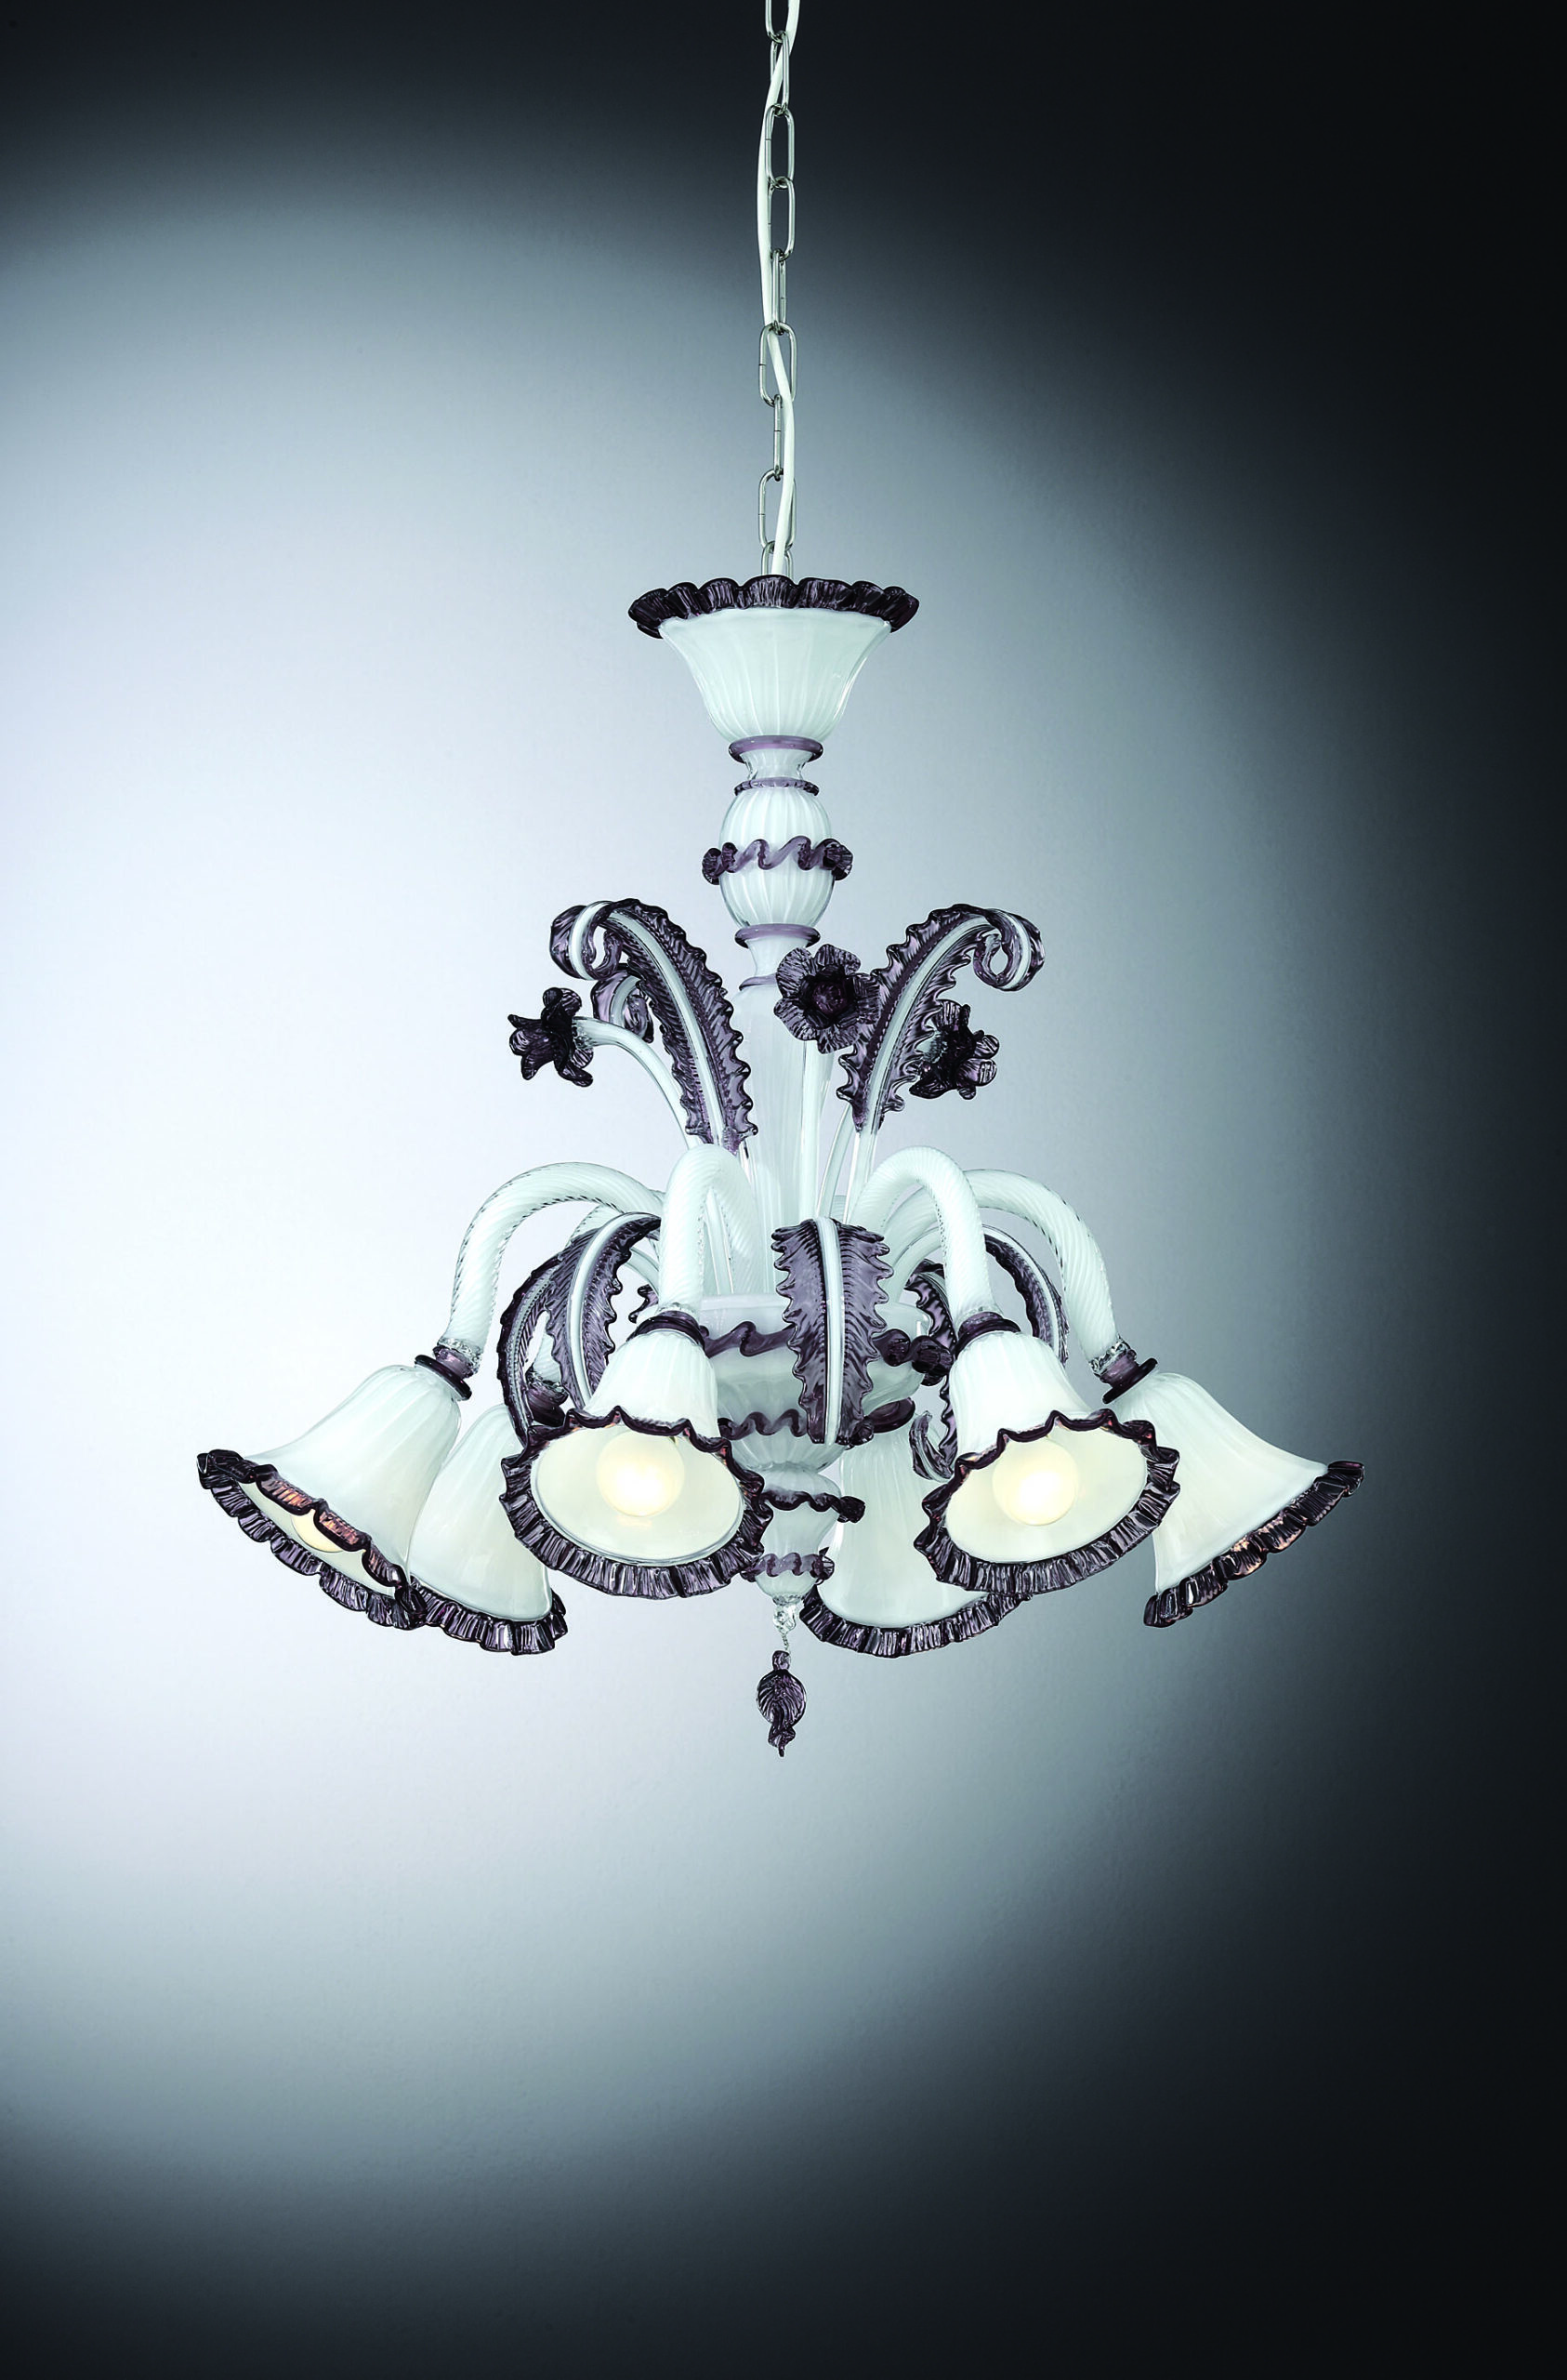 Exclusive Venetian Glass Chandelier "Labia" With 6 Lights